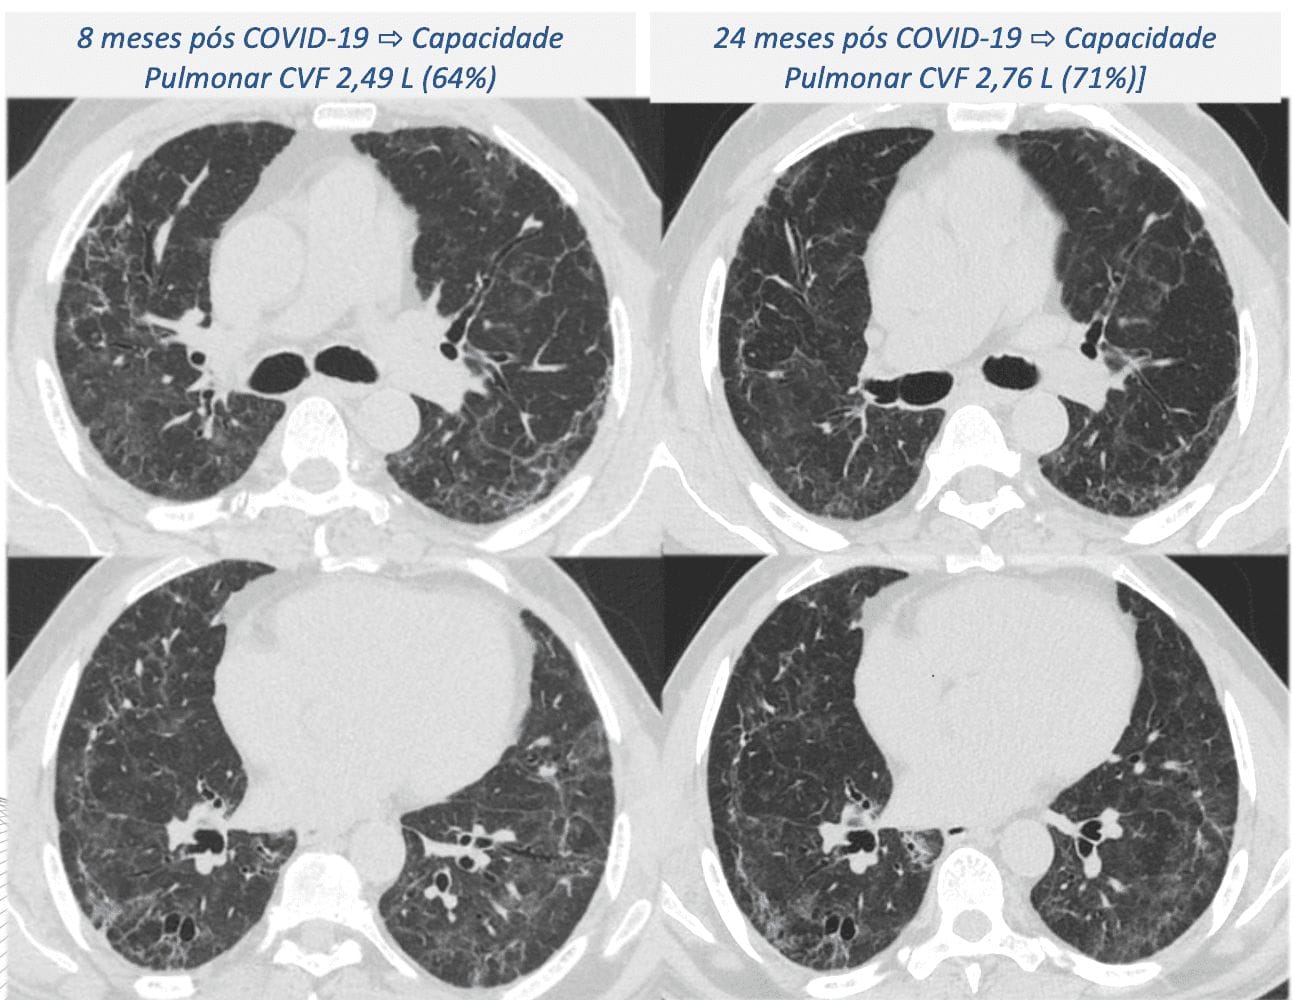 Estudo aponta que sequelas pulmonares podem se agravar até dois anos após internação por COVID-19 severa